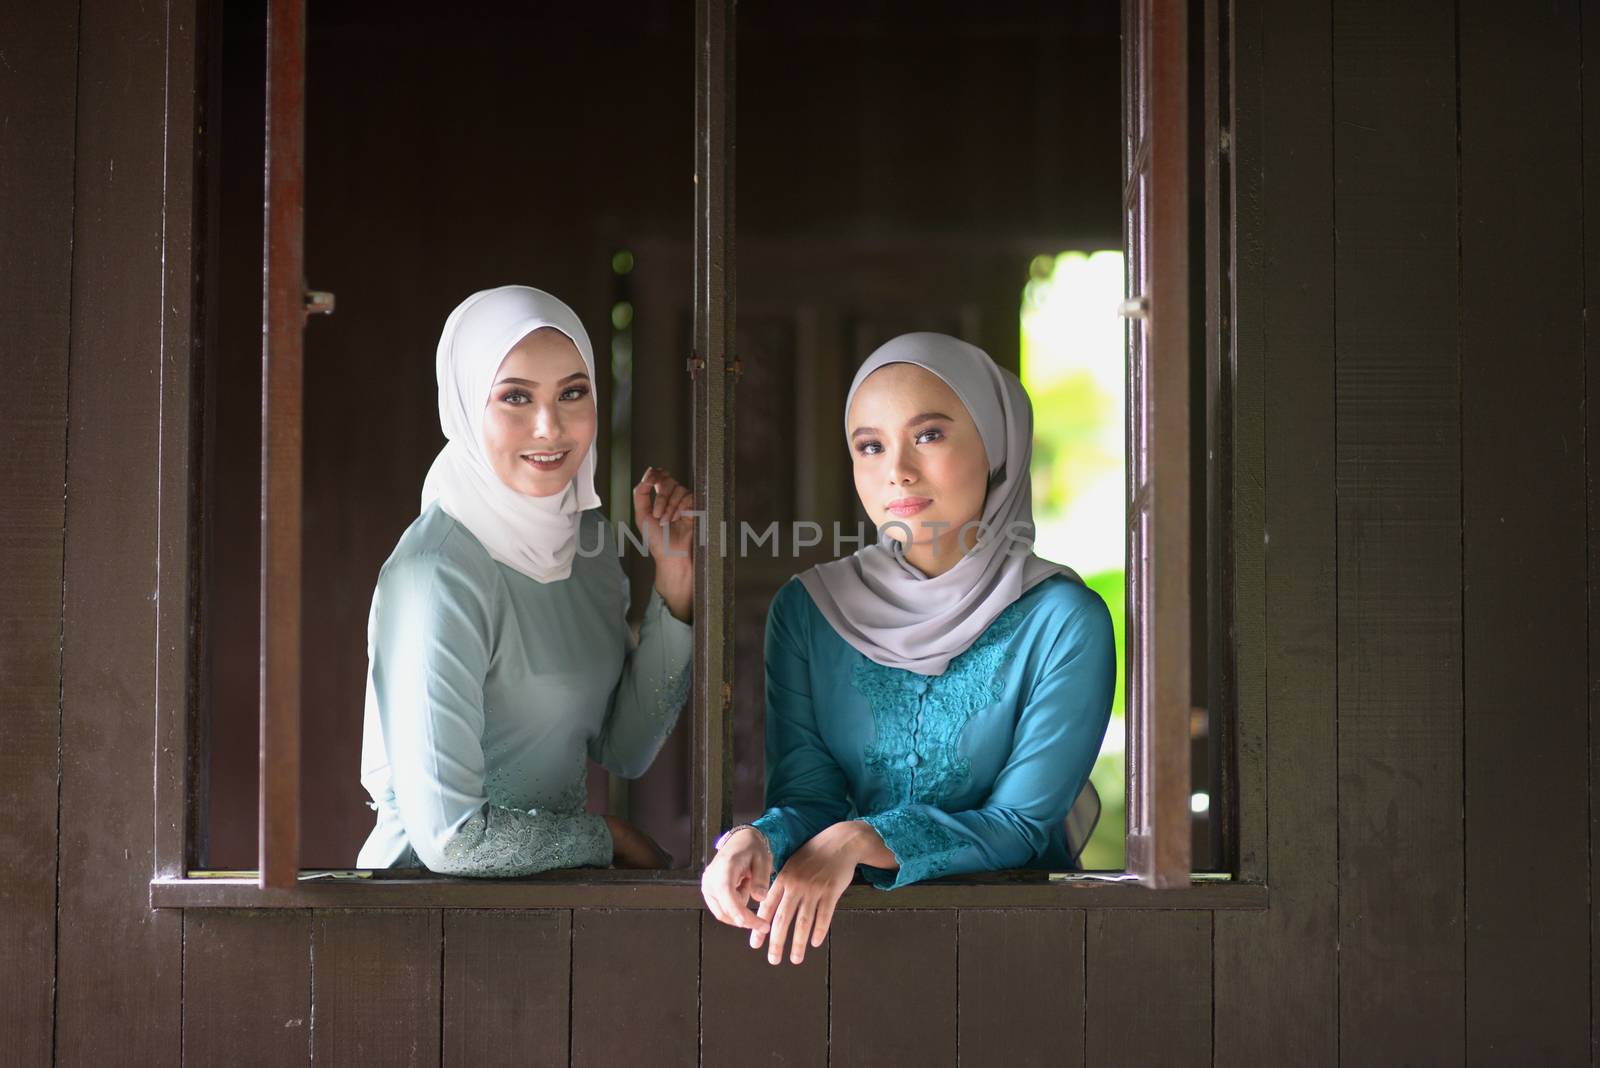 Muslim girls in hijab by szefei